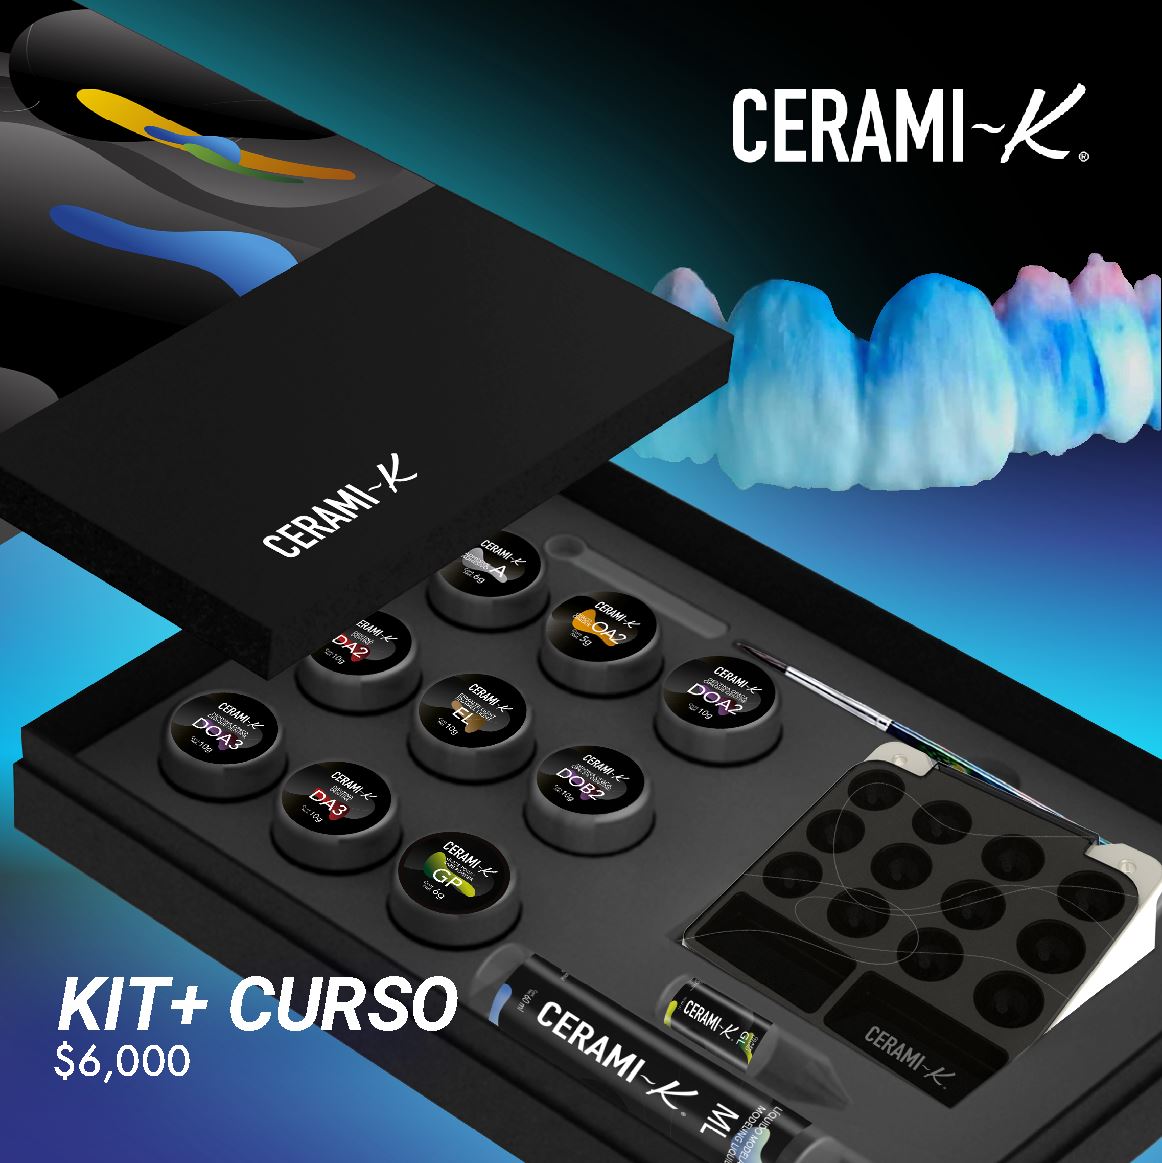 Kit Cerami-K® + Curso promoción BUEN FIN CLEMDE Dental 